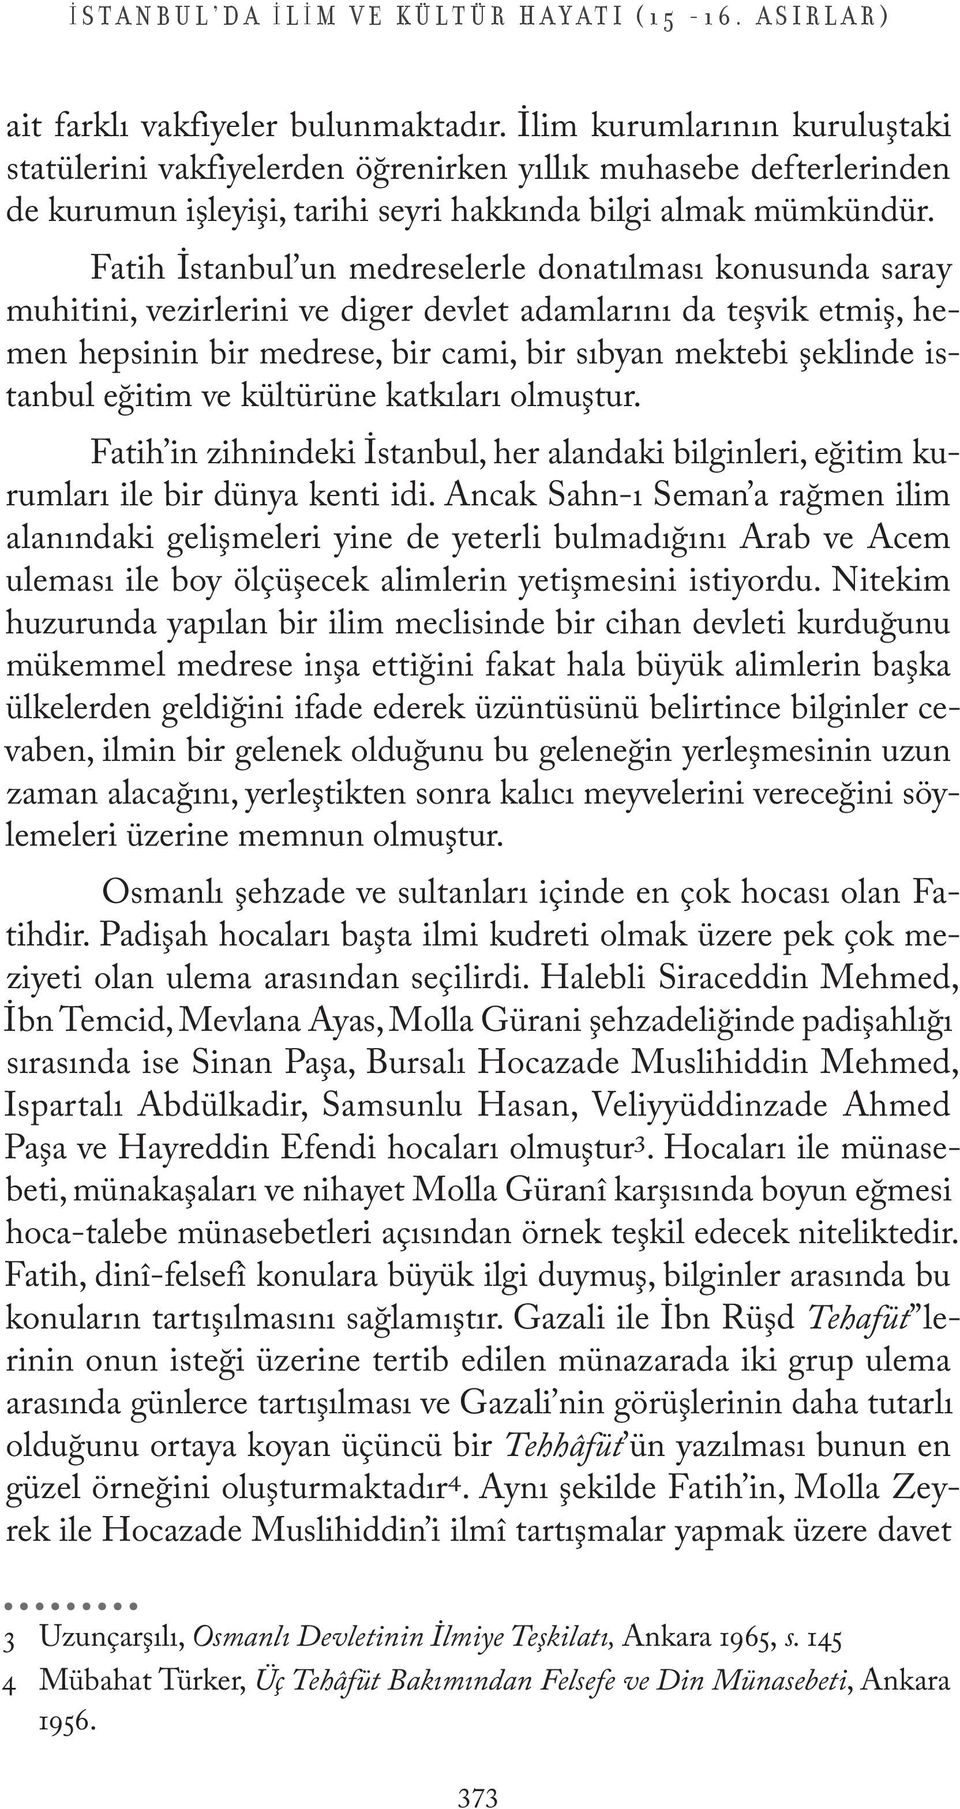 Fatih İstanbul un medreselerle donatılması konusunda saray muhitini, vezirlerini ve diger devlet adamlarını da teşvik etmiş, hemen hepsinin bir medrese, bir cami, bir sıbyan mektebi şeklinde istanbul